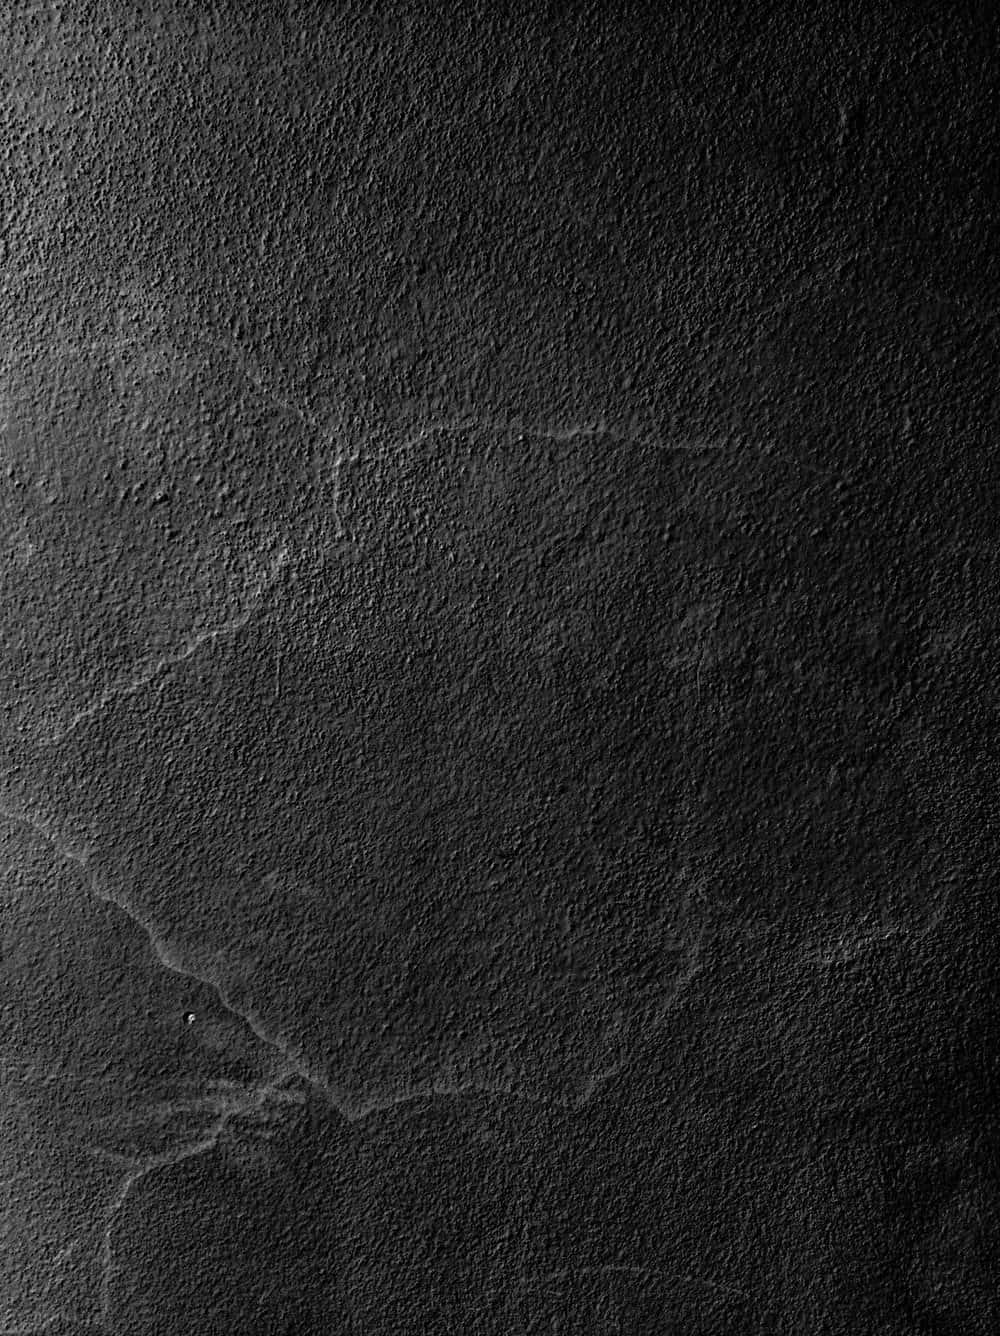 Black Leather Concrete Texture Picture